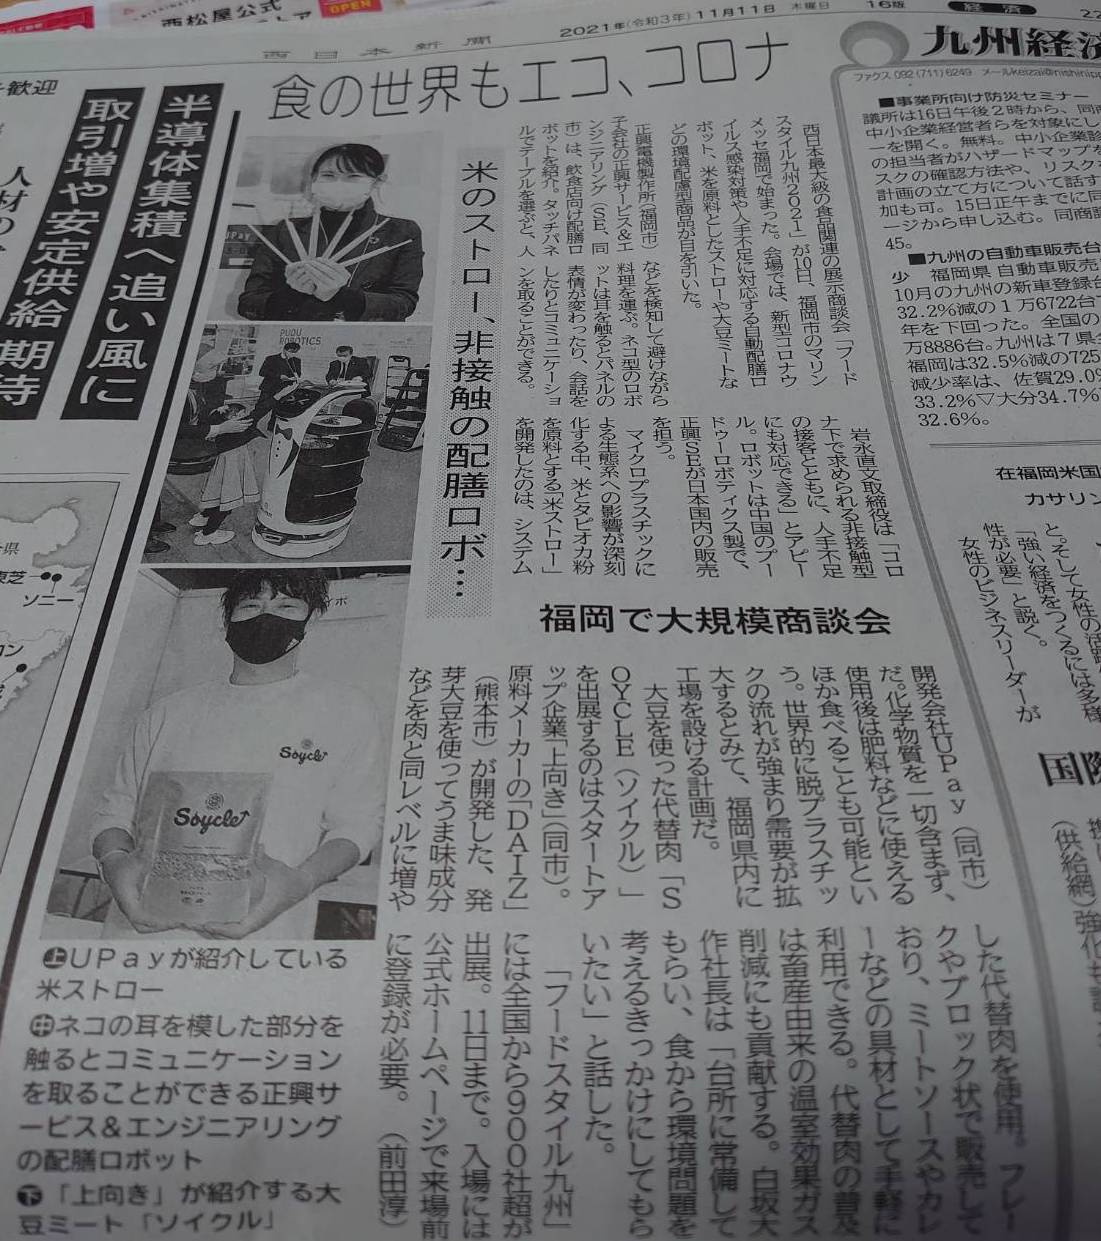 【メディア掲載】SOYCLEが西日本新聞に掲載されました。